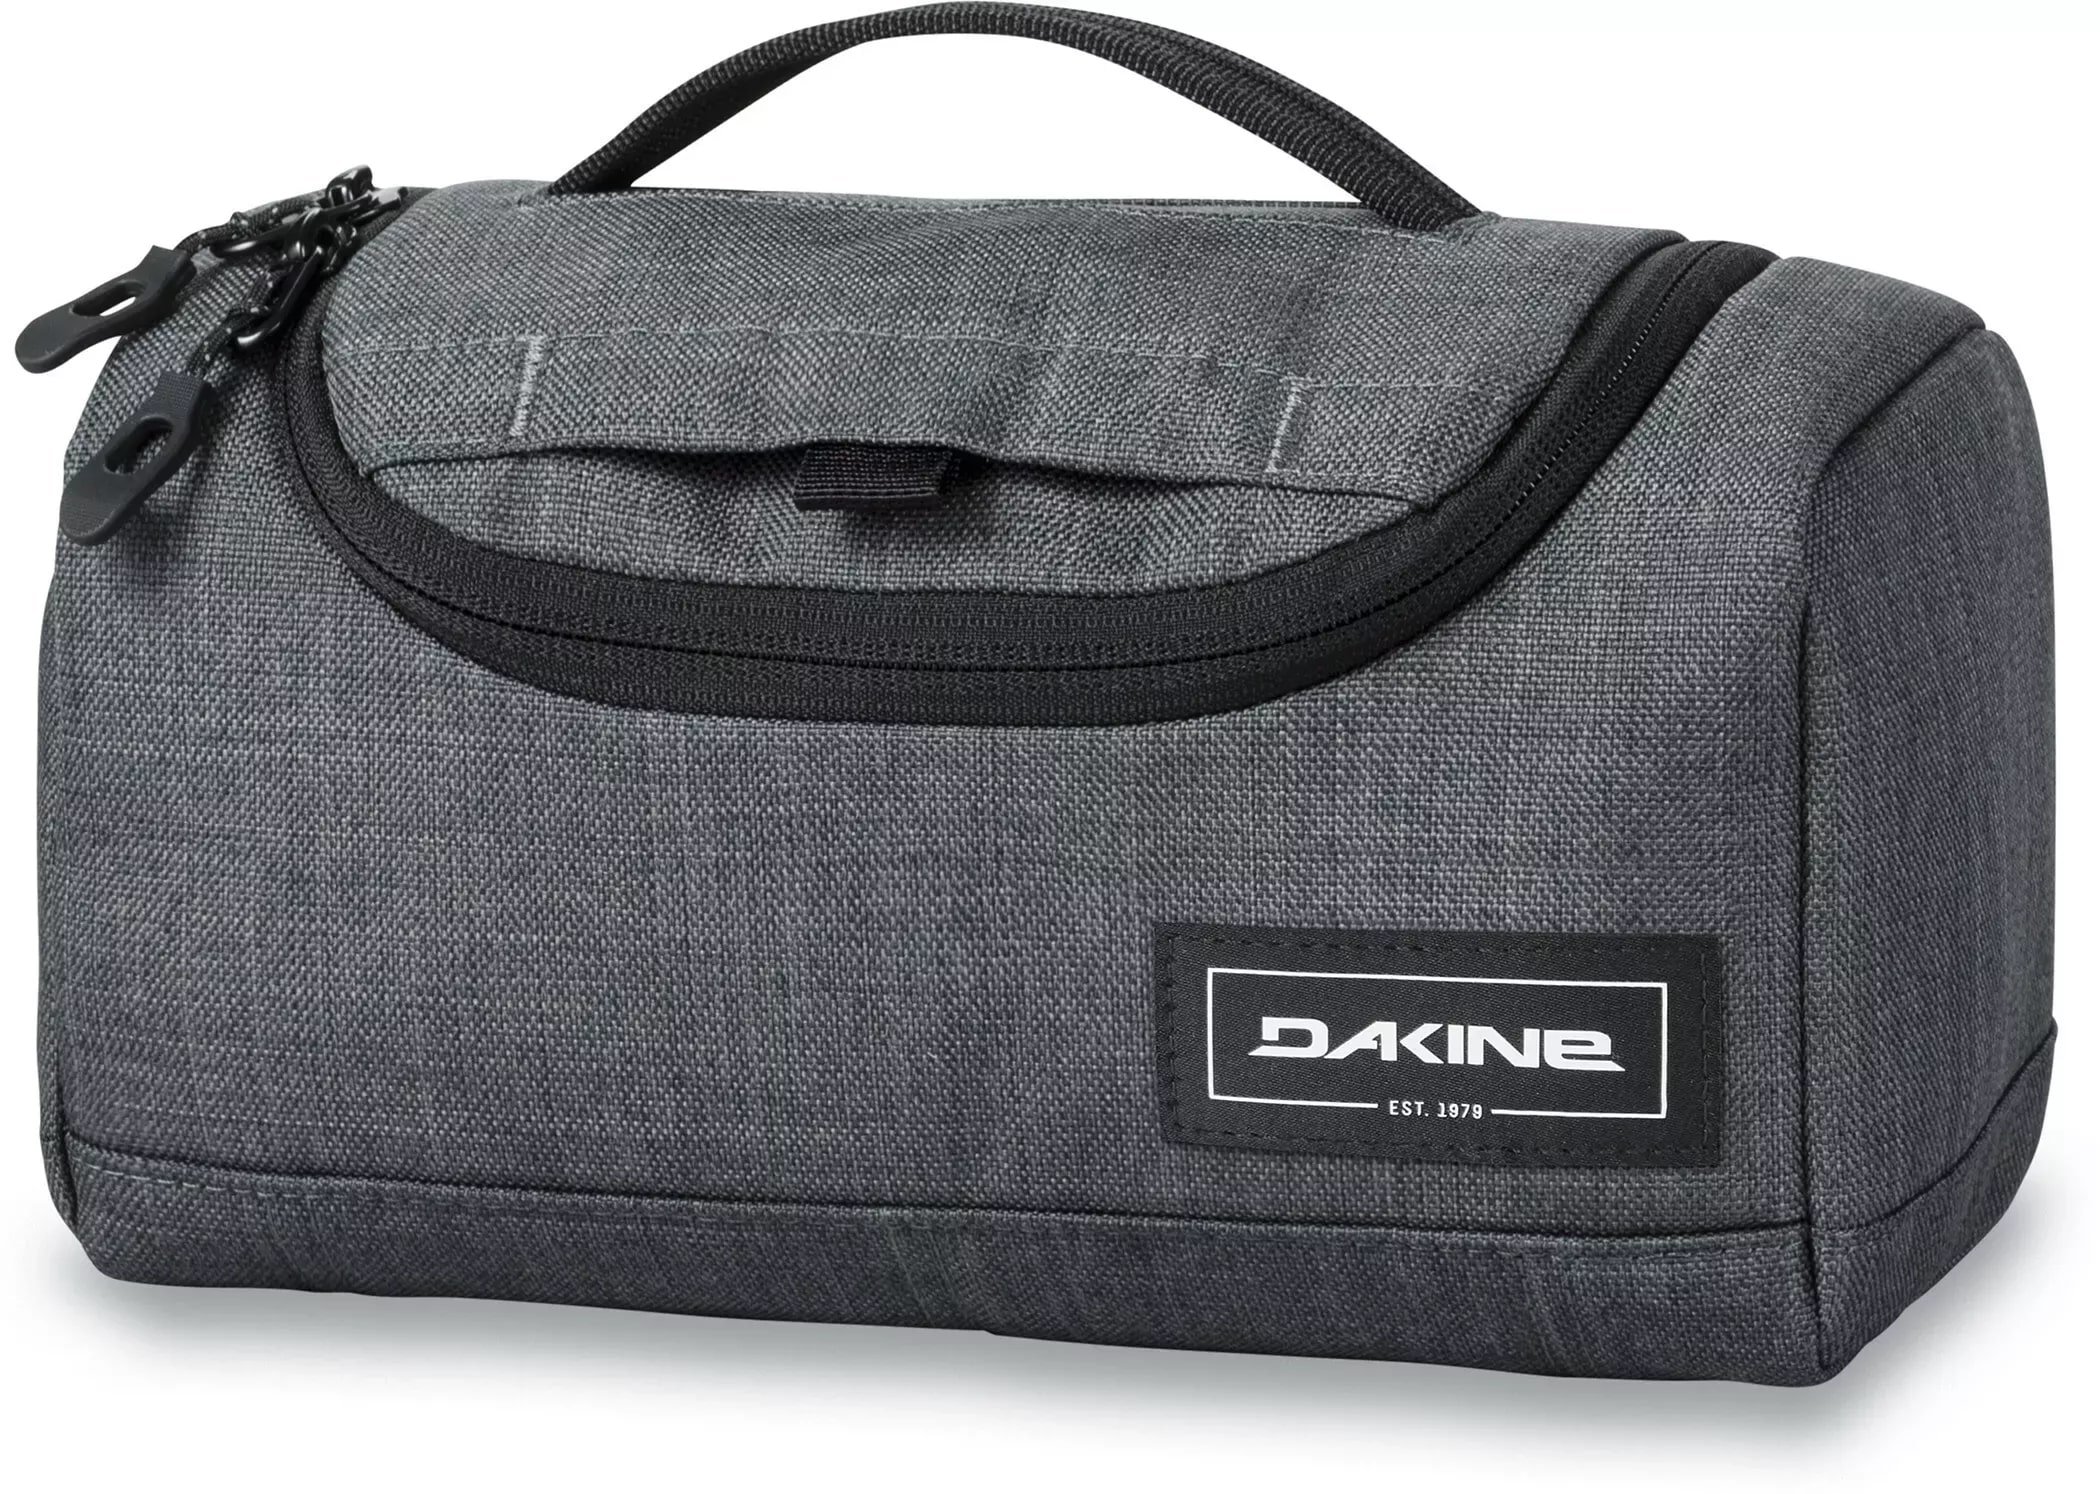 DaKine Revival Kit